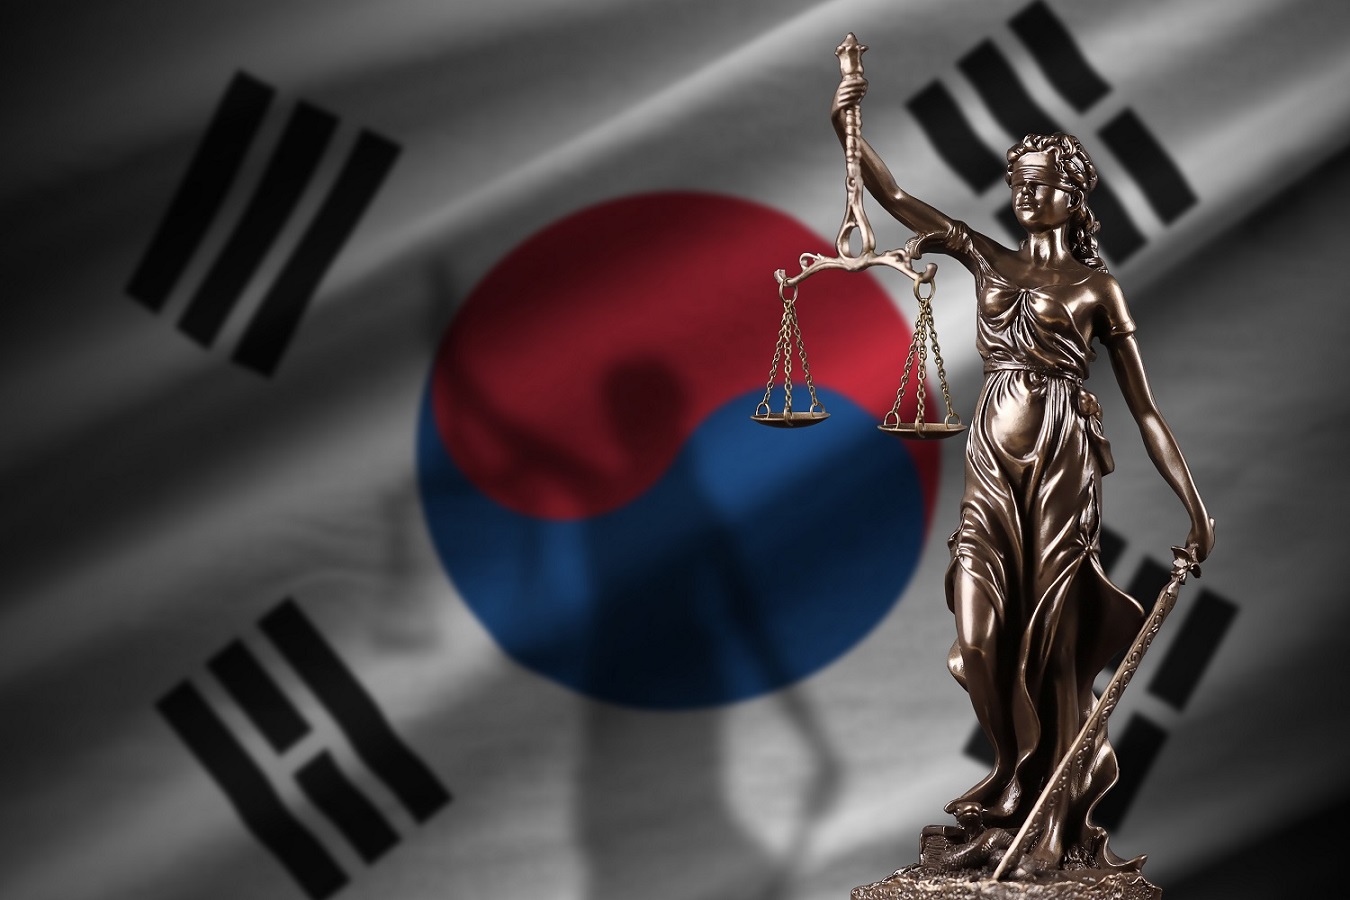 Ce ministre sud-coréen possède-t-il ou non des cryptomonnaies? Le ministre de la Justice en pleine polémique